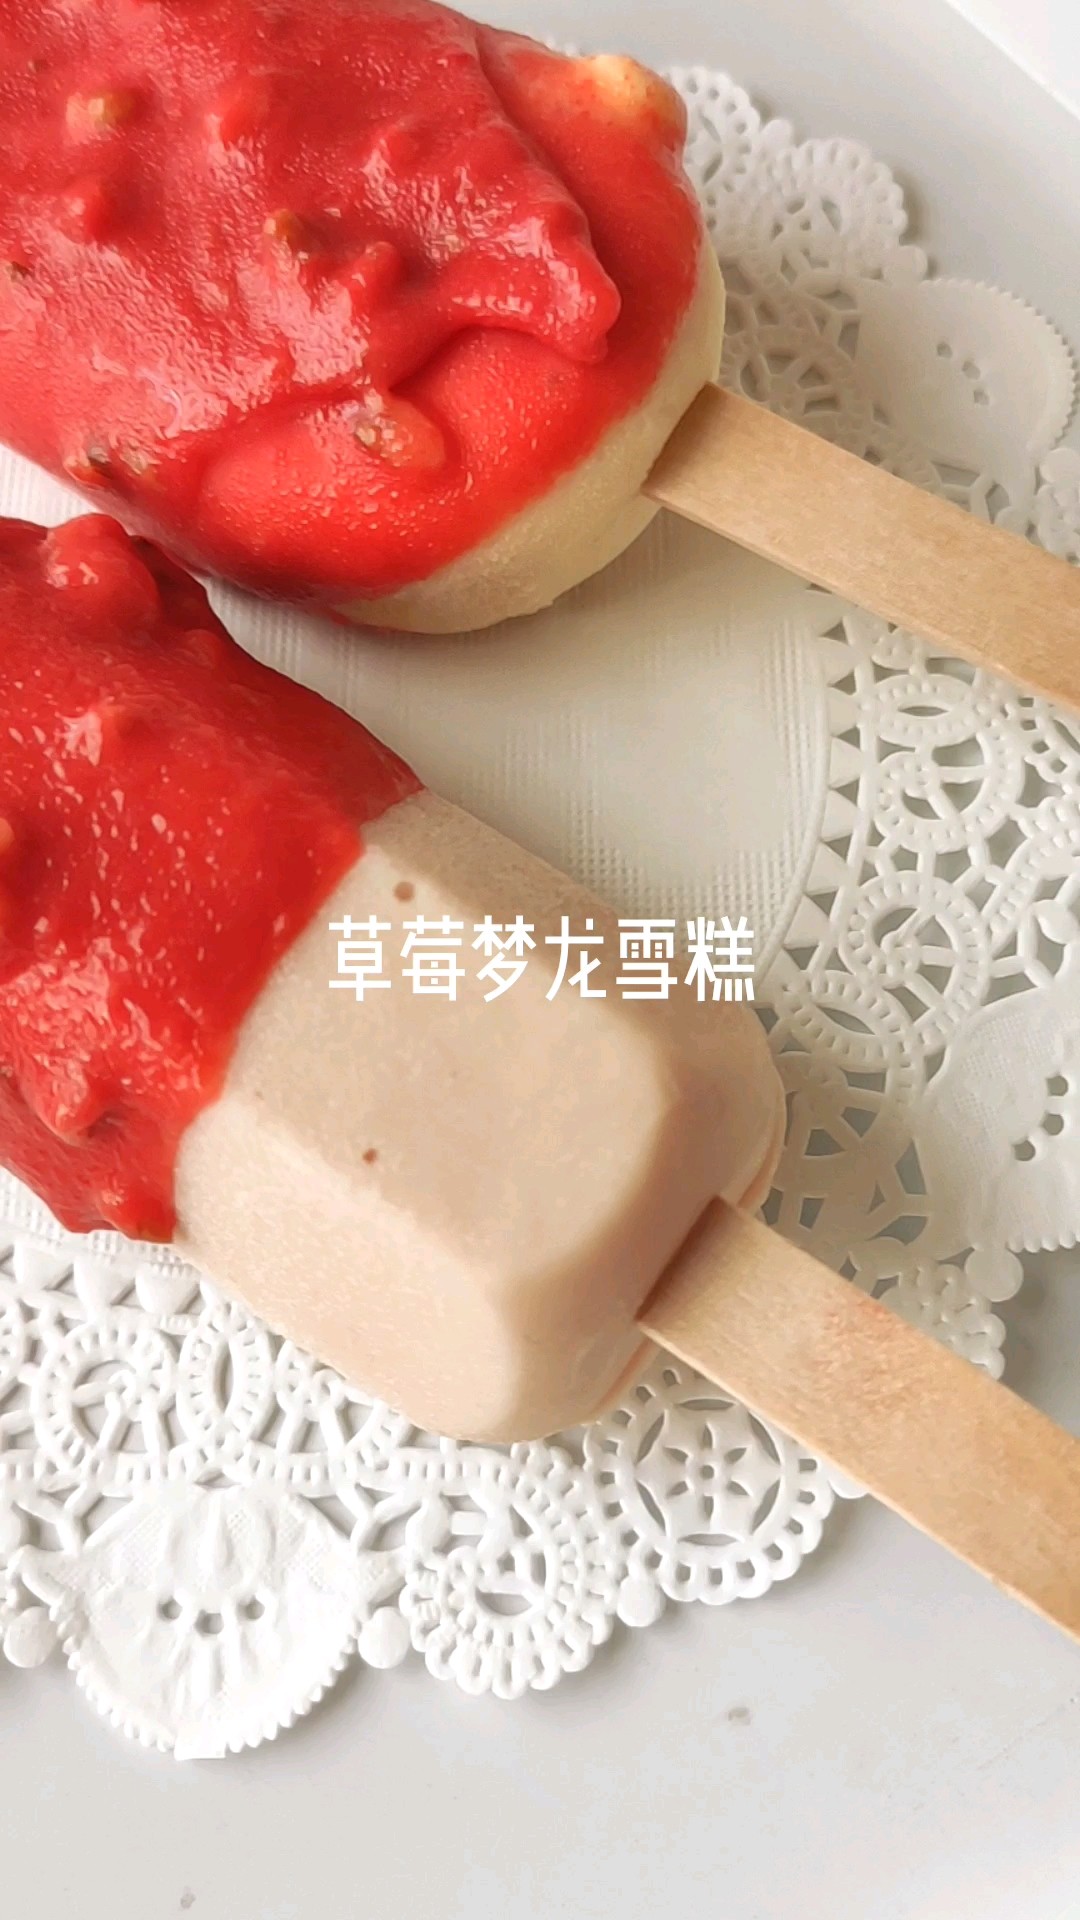 Strawberry Dream Dragon Ice Cream